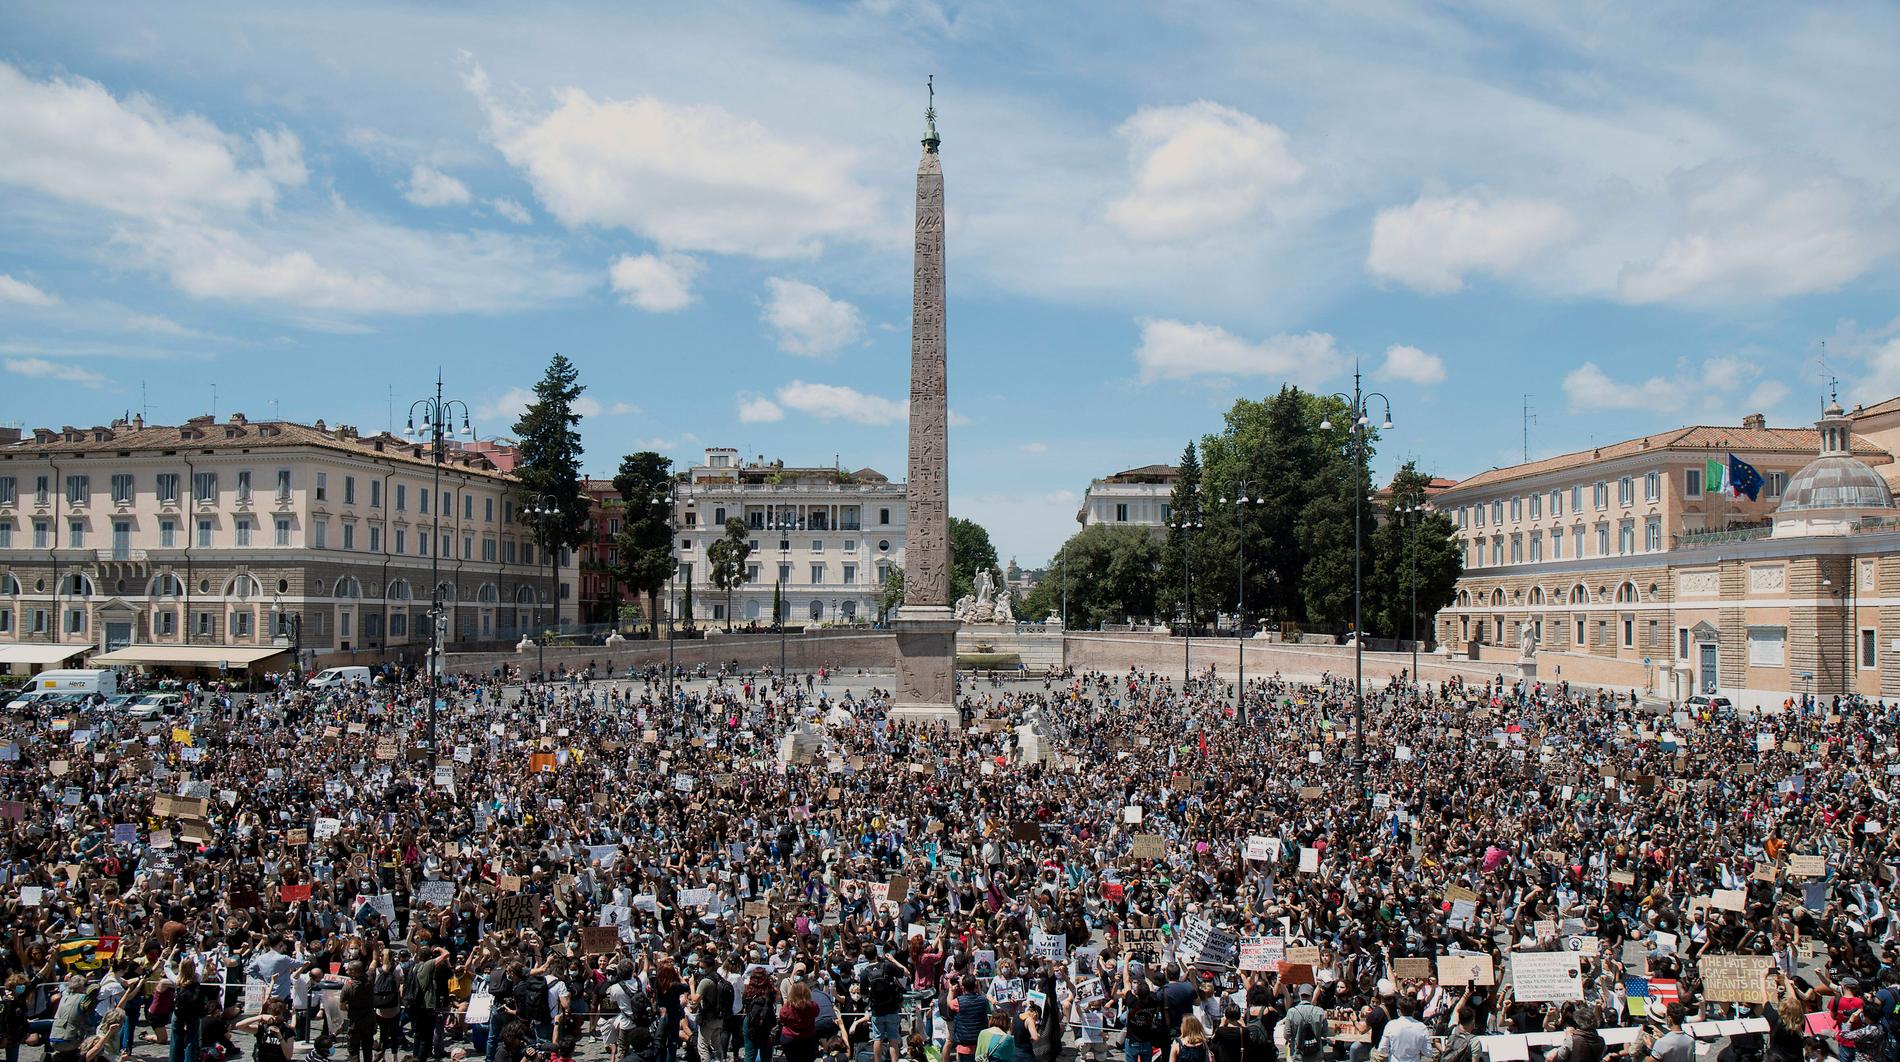 Människor fyller på söndagen Piazza del Popolo, ett av Roms största torg, till stöd för Black lives matter-rörelsen i USA.